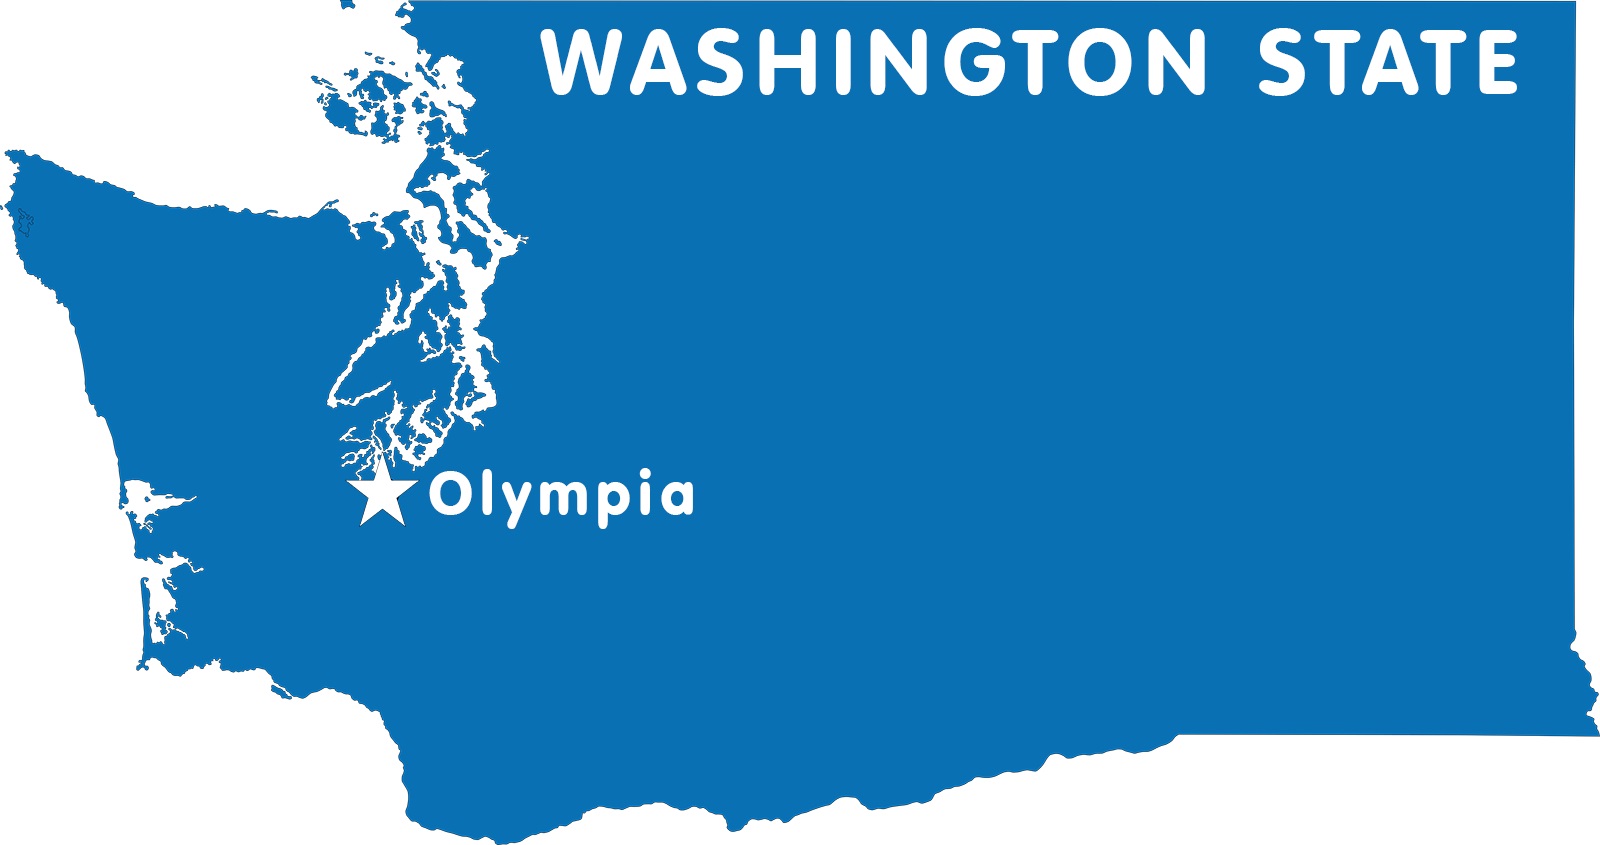 Washington Capital Map | Large Printable High Resolution and Standard Map